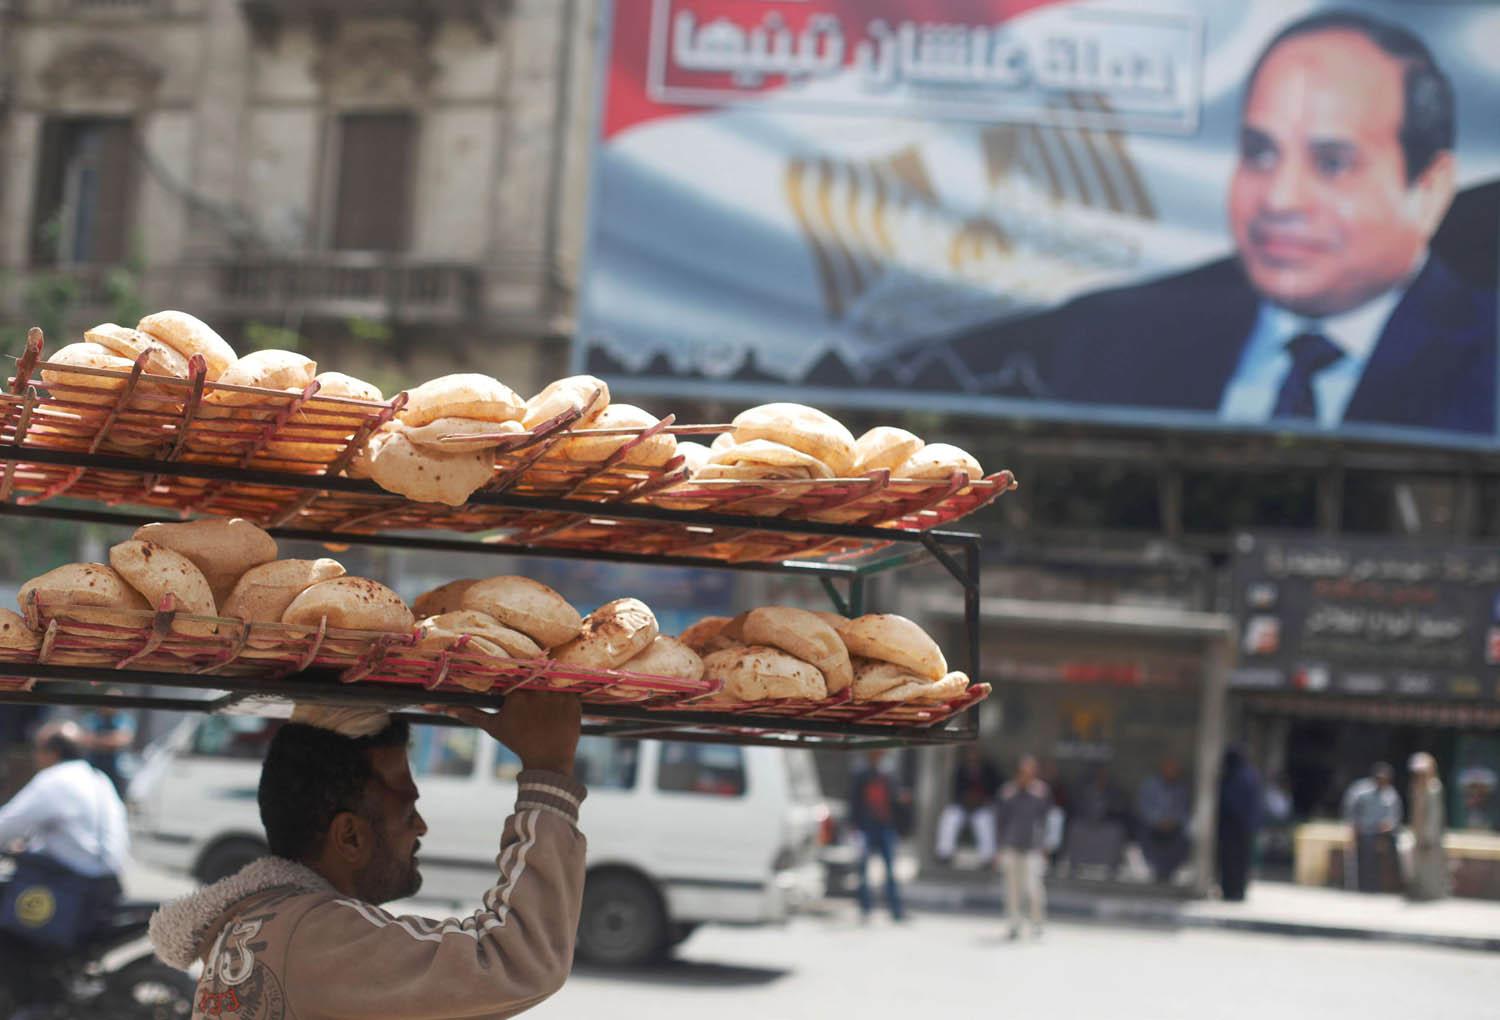 عامل يحمل خبزا يمر بالقرب من ملصق للرئيس المصري